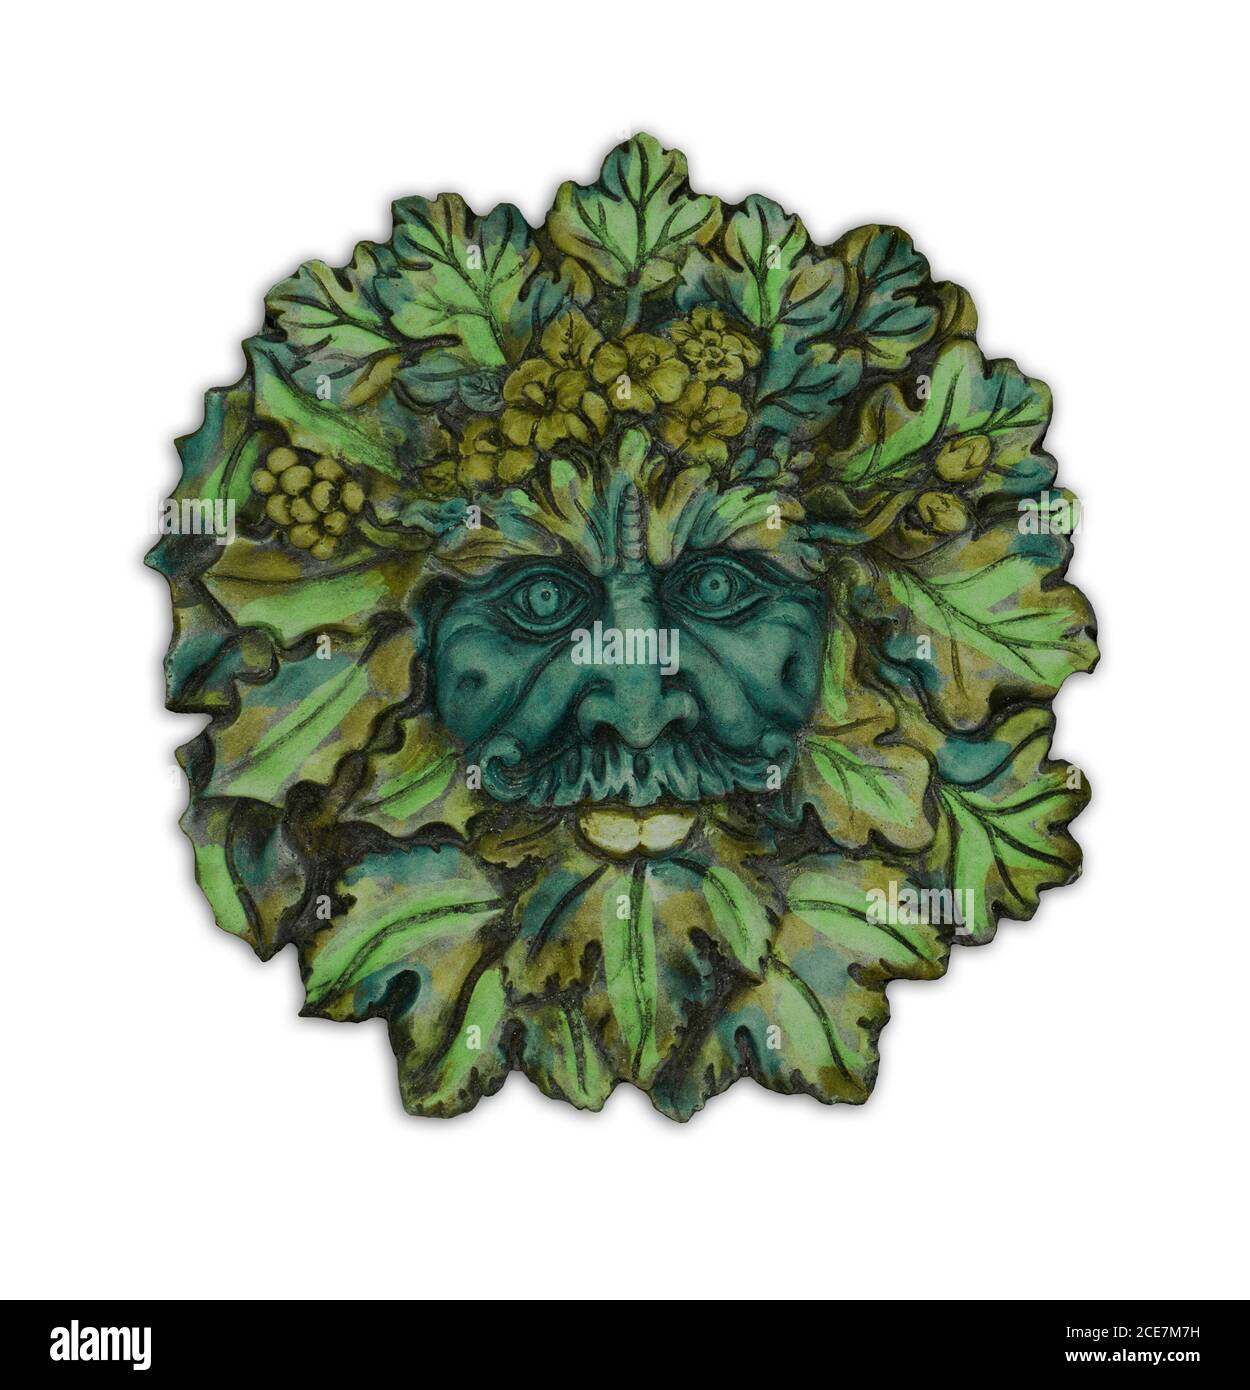 Art de jardin en béton très décoratif, face de feuilles de Green Man, esprit mythique britannique des forêts, sur fond blanc Banque D'Images